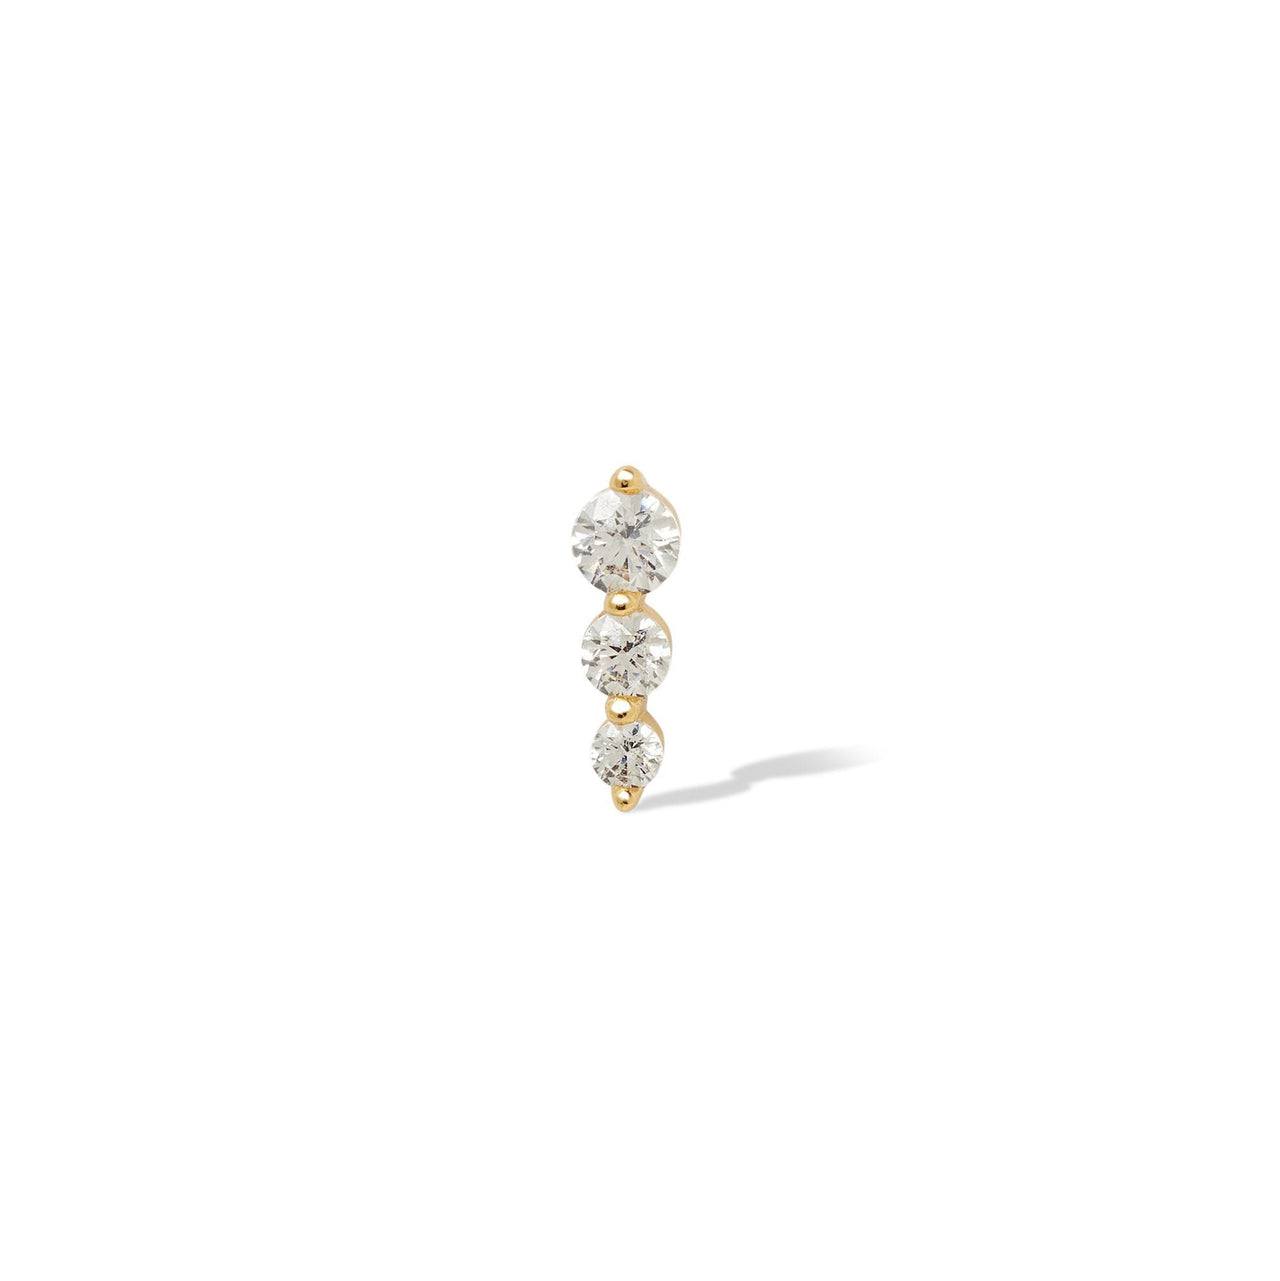 Single earring "True Love" triple dot gold vermeil stud  (ball screw)